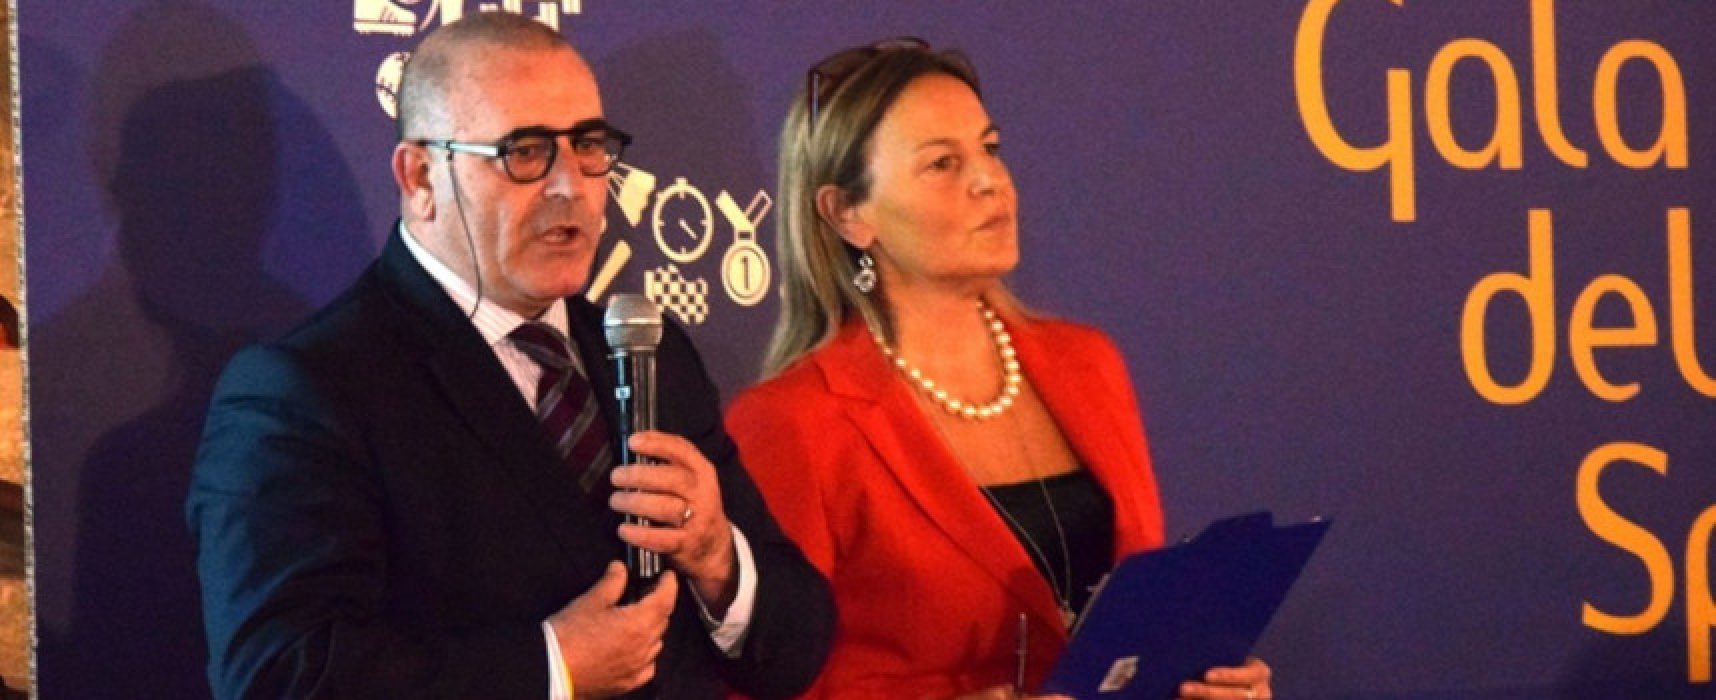 Ripresa attività sportive, presidente Coni Puglia: “Lavoriamo per ripartenza in sicurezza”